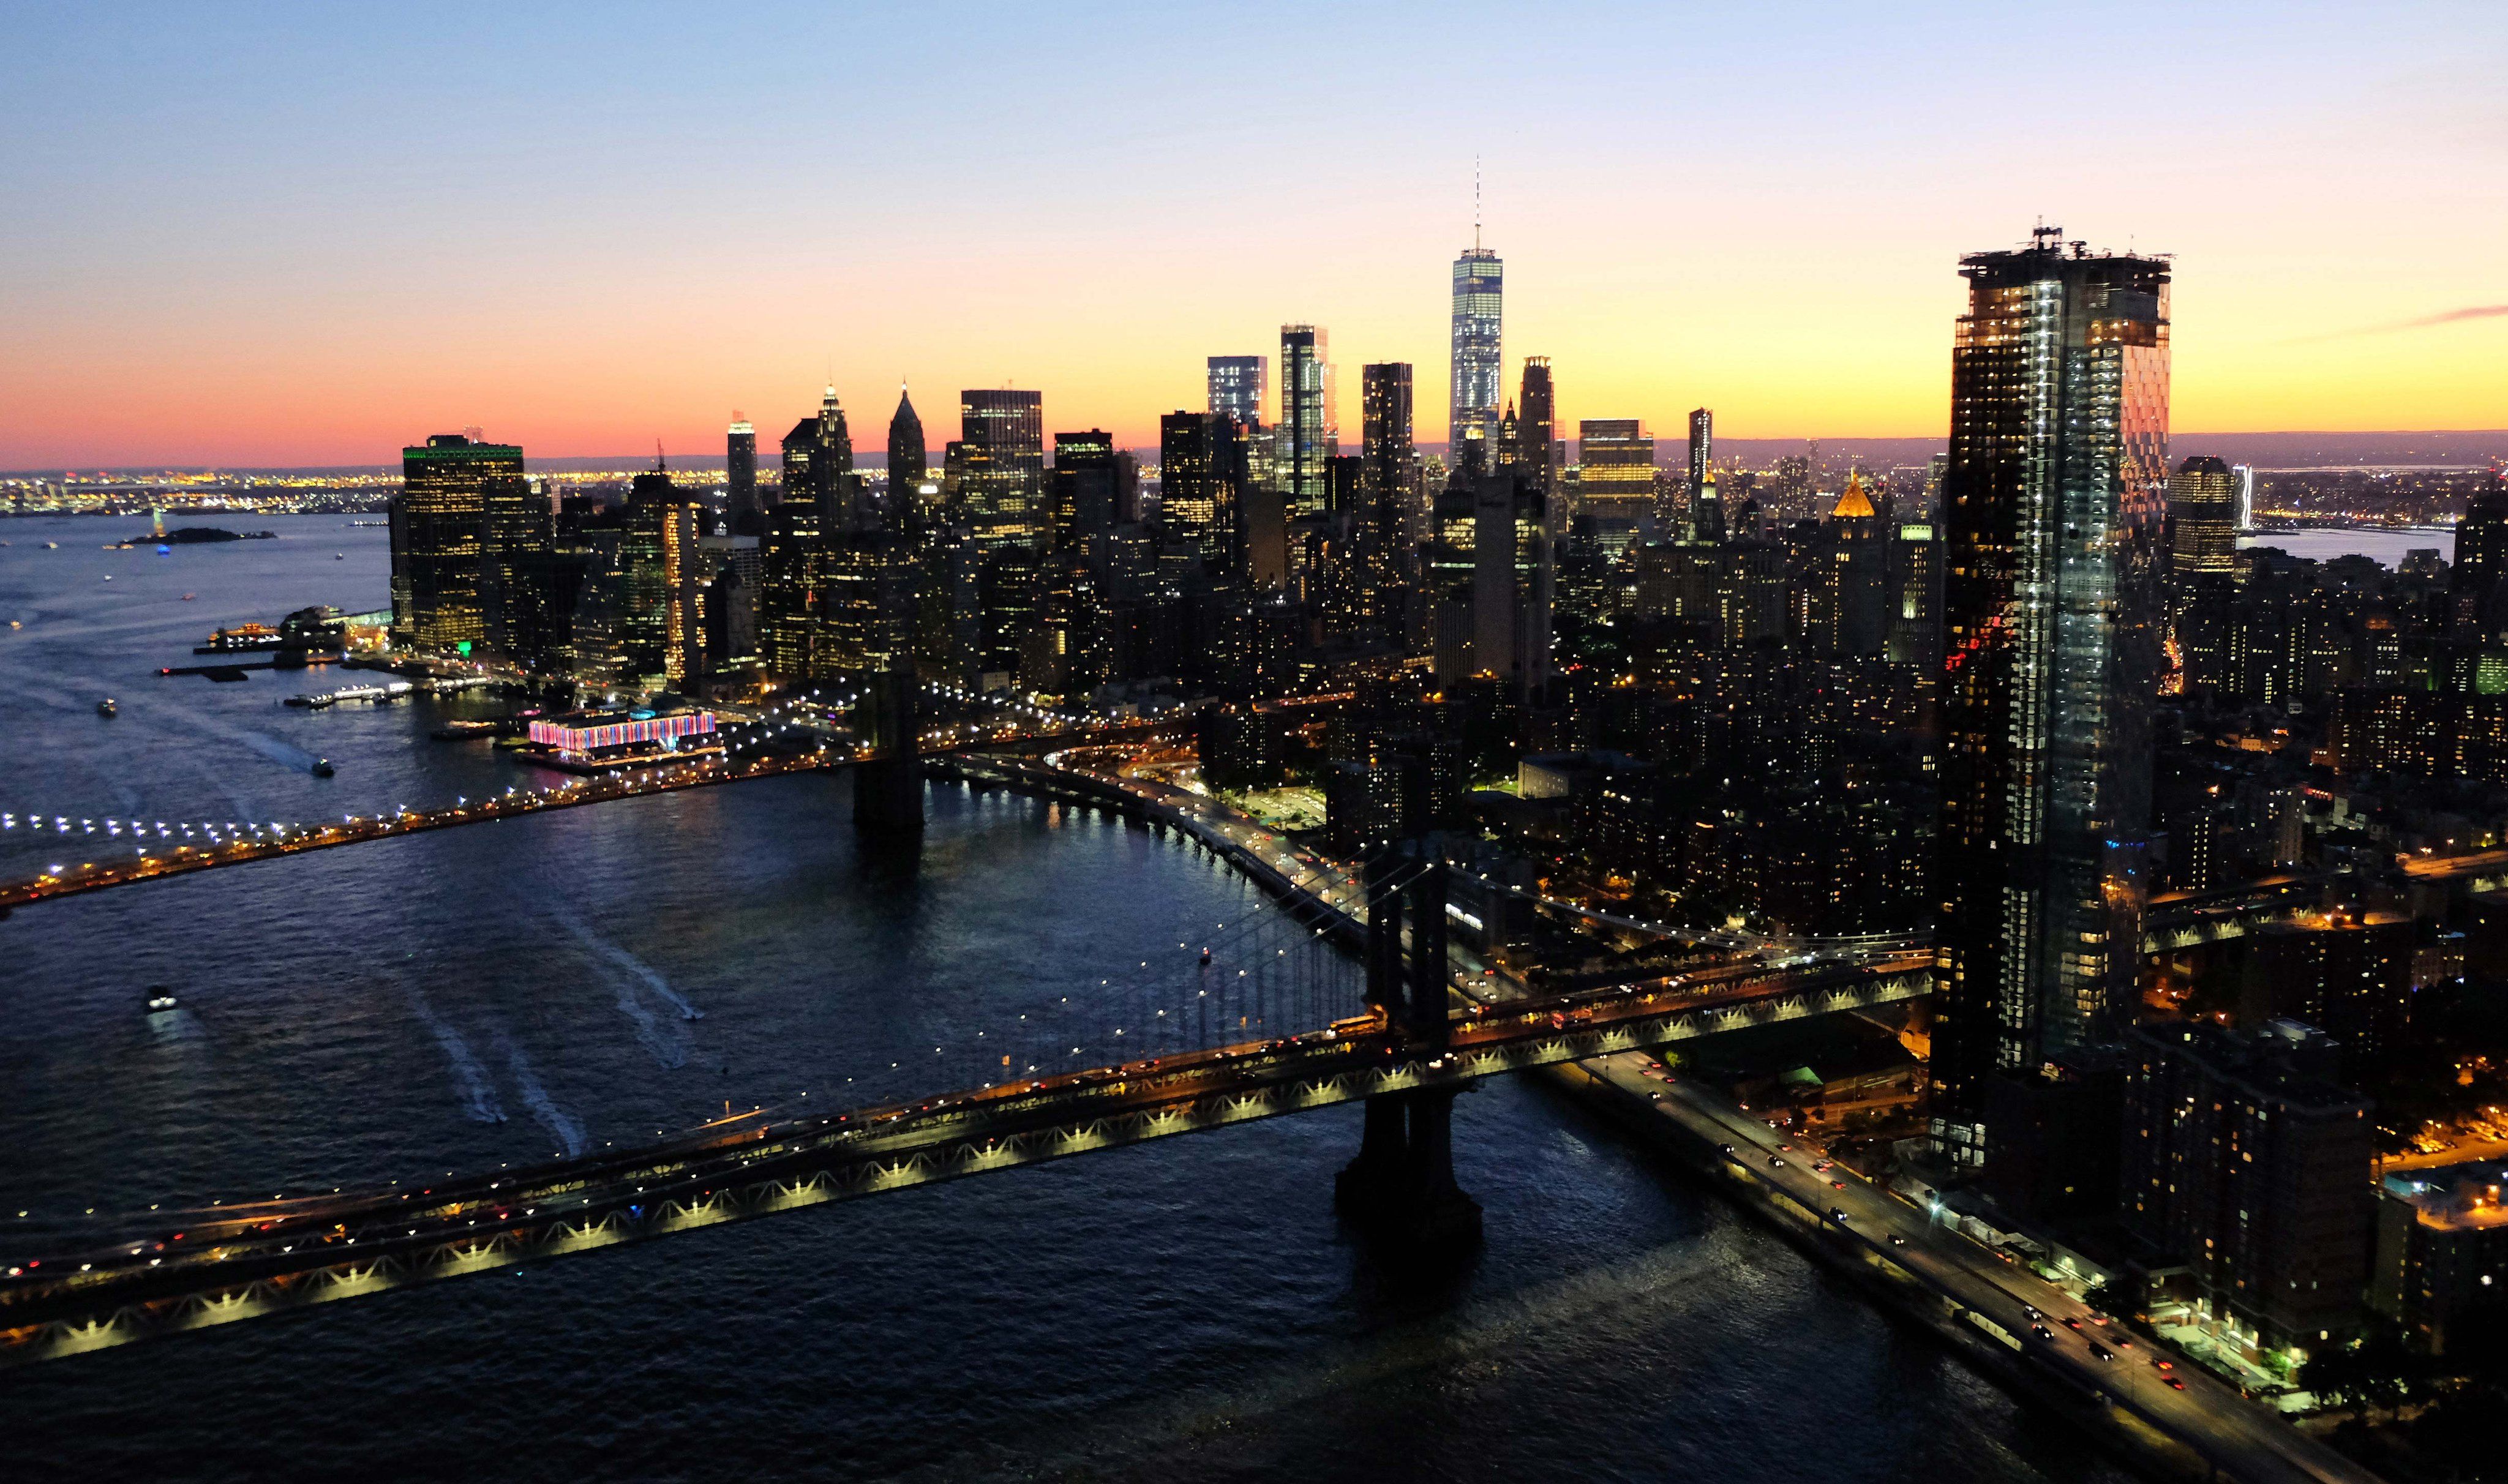  Das Schönste Der Welt Hintergrundbild 4096x2424. NewYorkCity.de eure Arbeit daheim etwas schöner zu machen, habe ich GRATIS Hintergrundbilder von New York erstellt! Findet hier über 100 meiner schönsten Fotos und ladet hier euer Hintergrundbild für